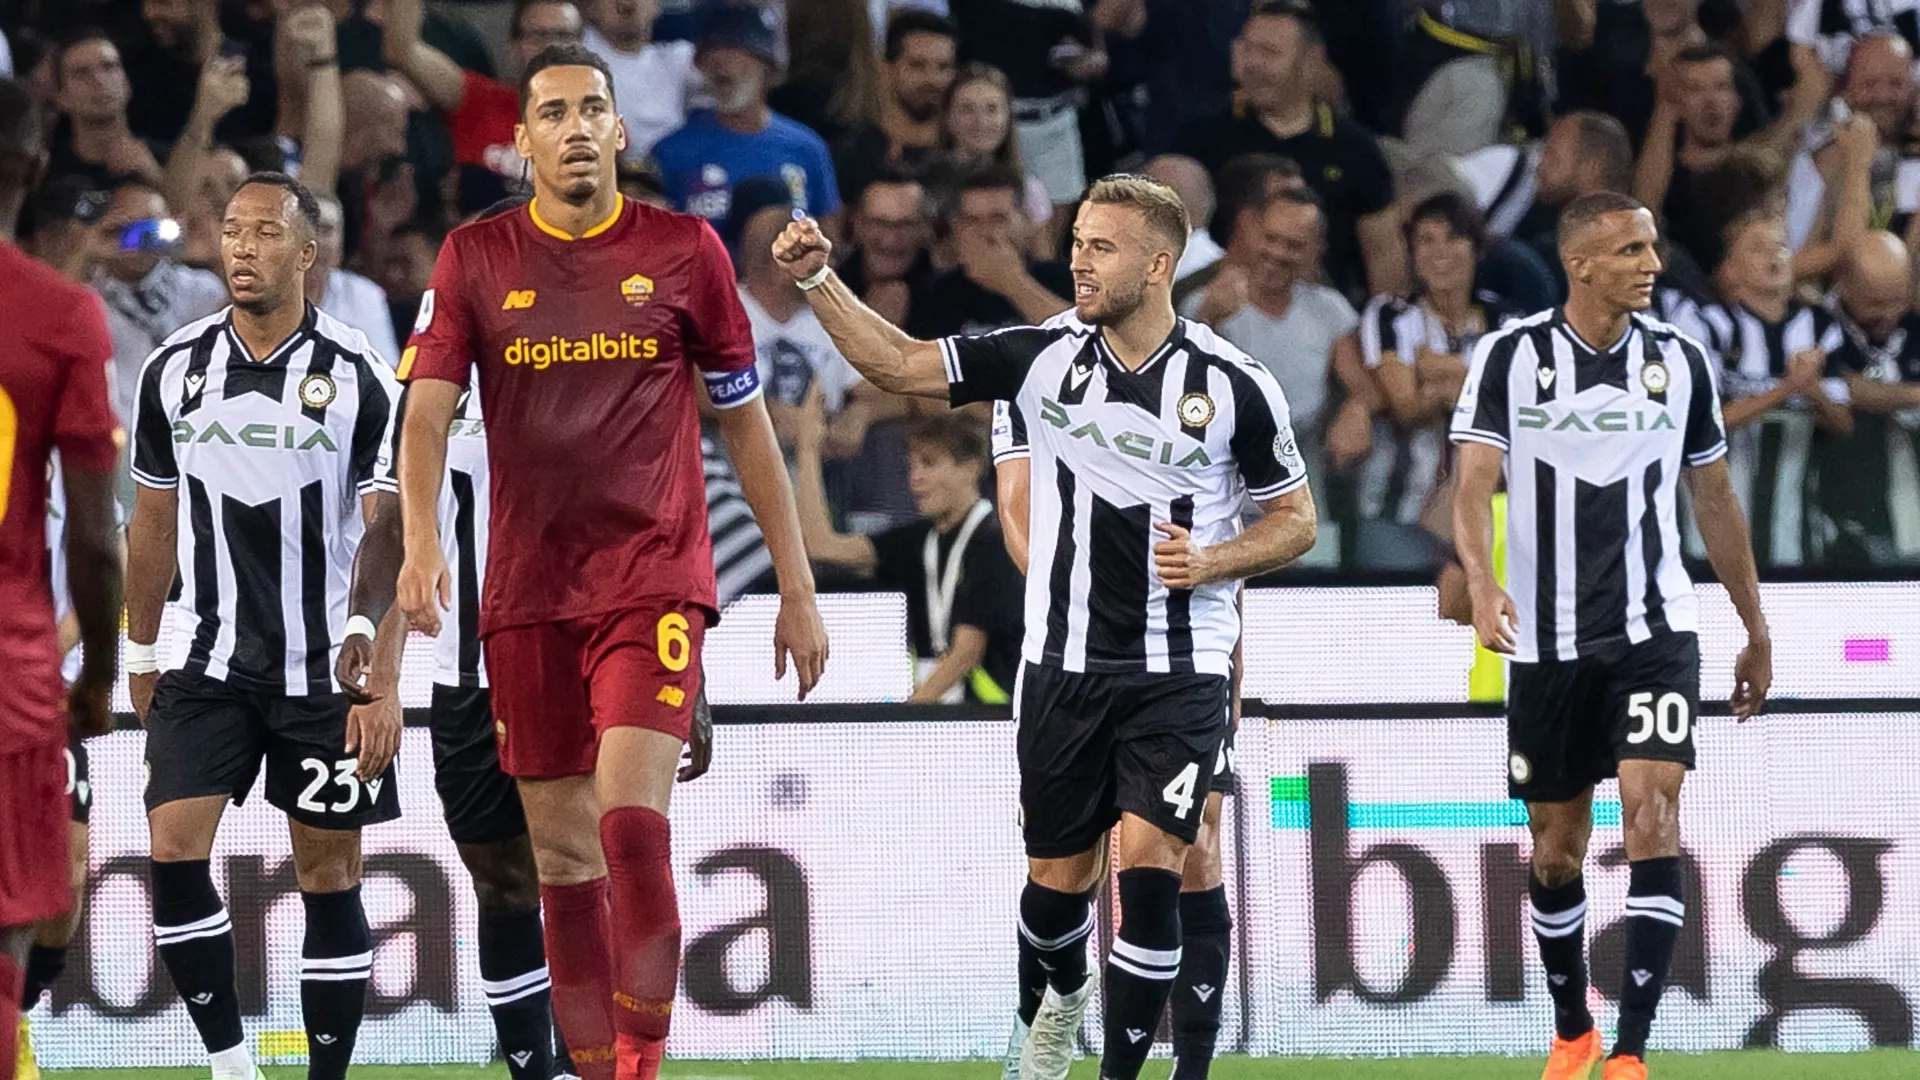 Roma thua thảm trên sân Udinese - Cựu sao Barca tỏa sáng trận ra mắt Espanyol